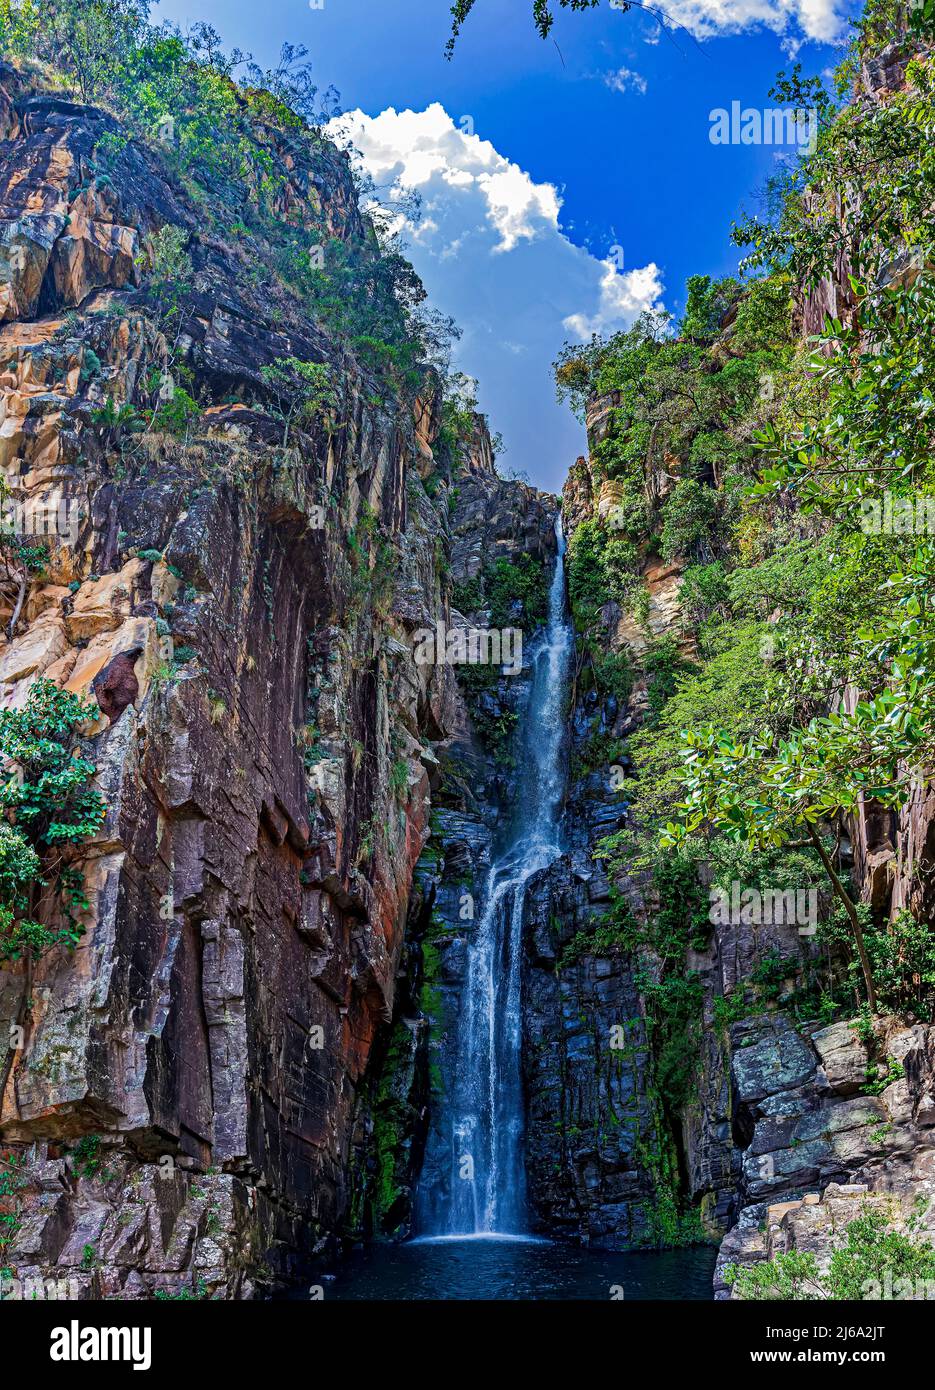 Wasserfall von VEU da Noiva (Schleier der Braut) zwischen den Felsen und typischer Vegetation des Cerrado in Serra do Cipo im Bundesstaat Minas Gerais, B Stockfoto